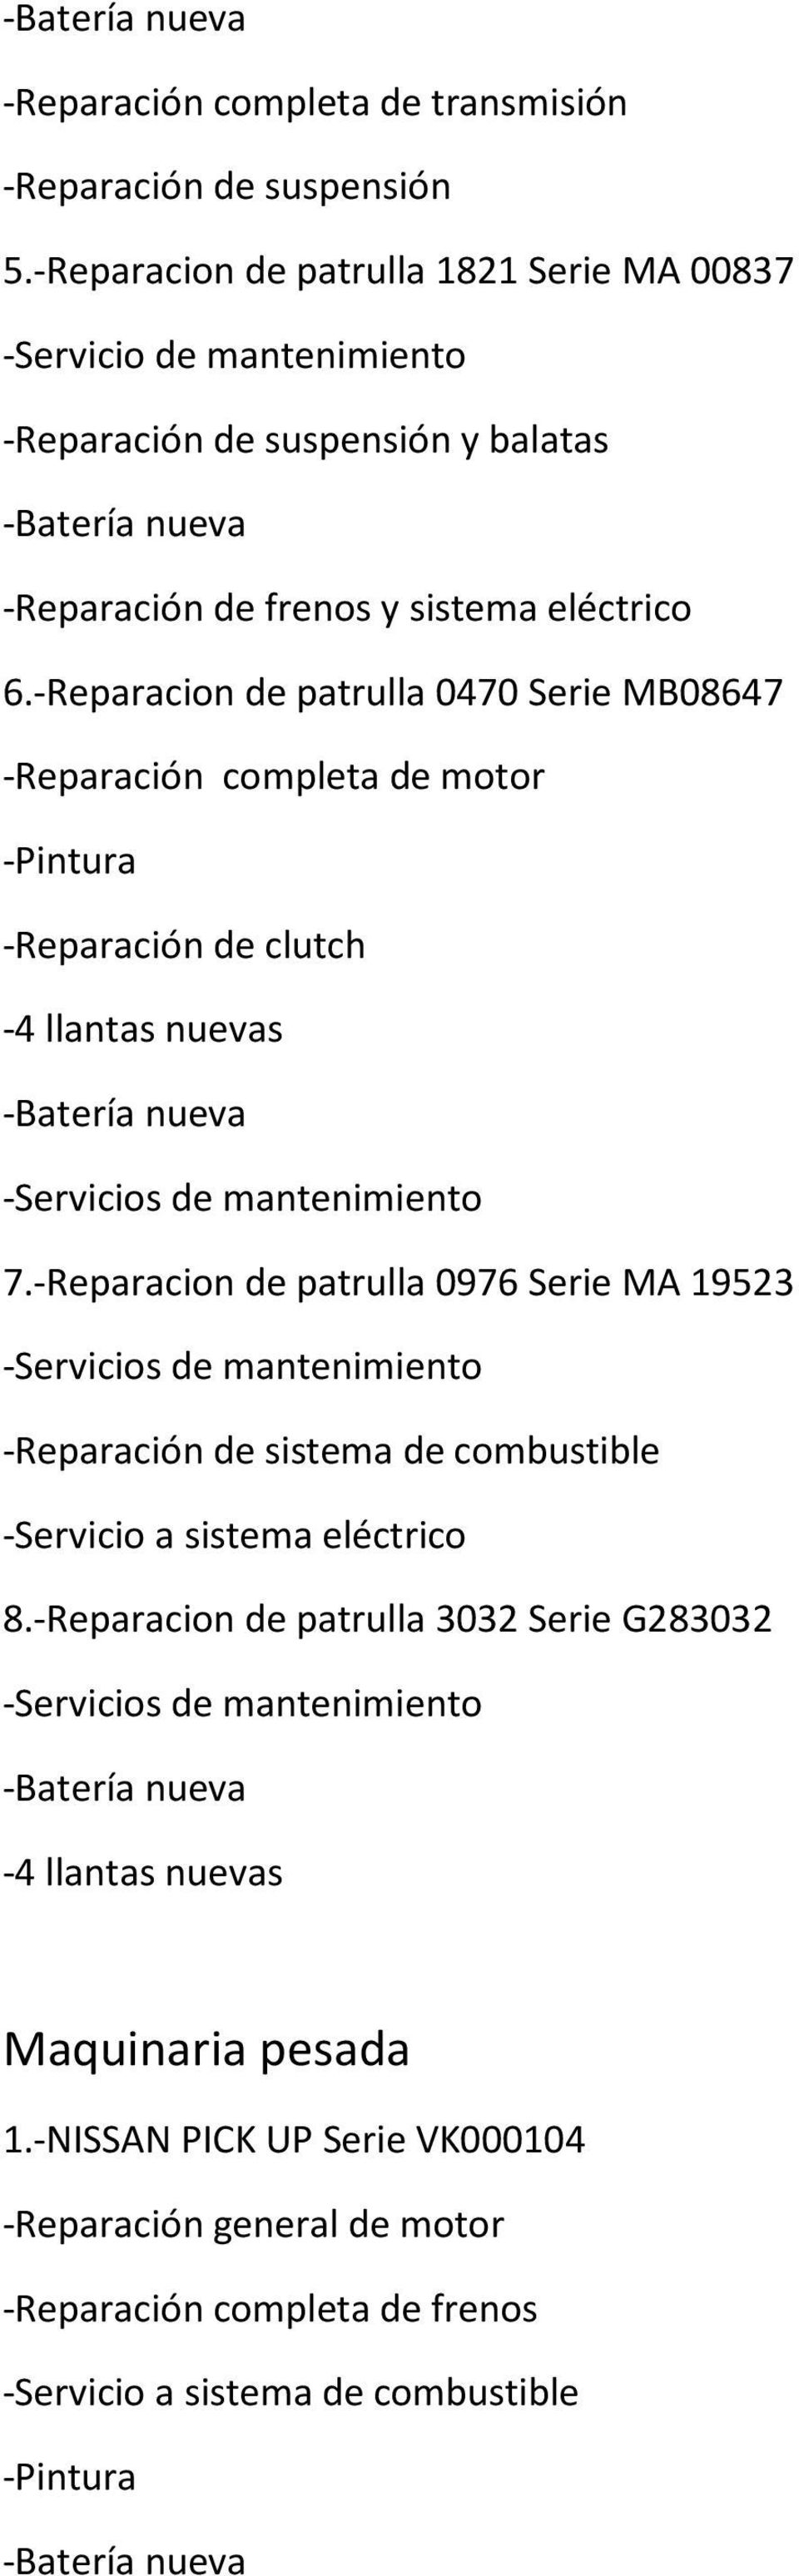 -Reparacion de patrulla 0470 Serie MB08647 -Reparación completa de motor -Reparación de clutch 7.